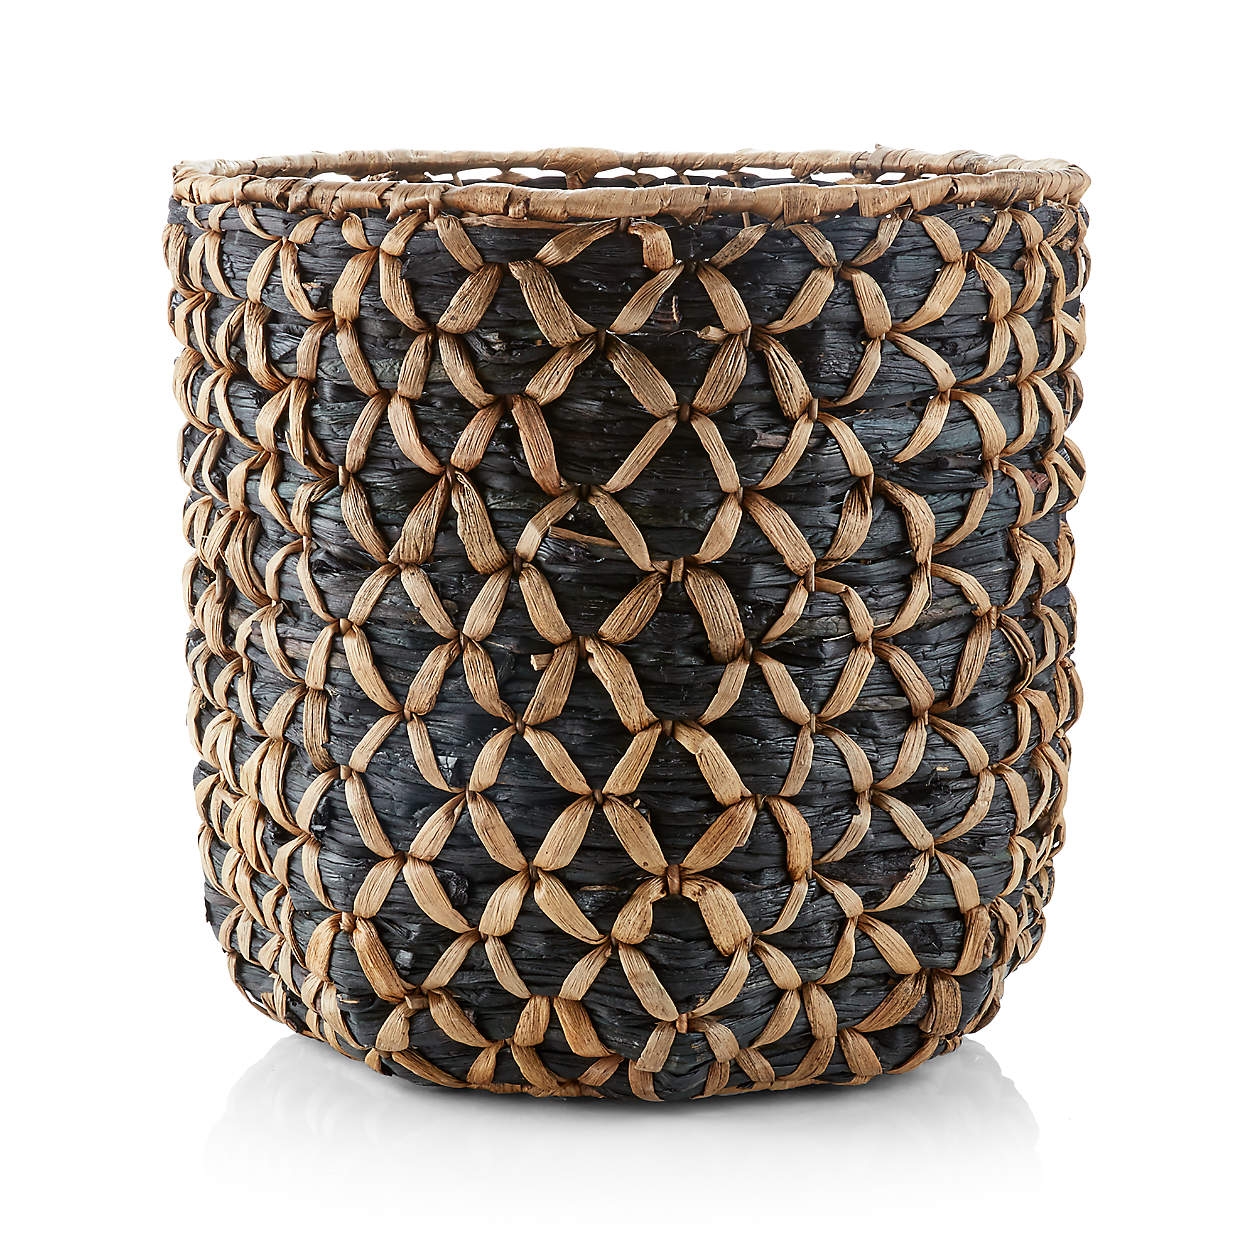 Safiyah Woven Black and Natural Basket - Image 0